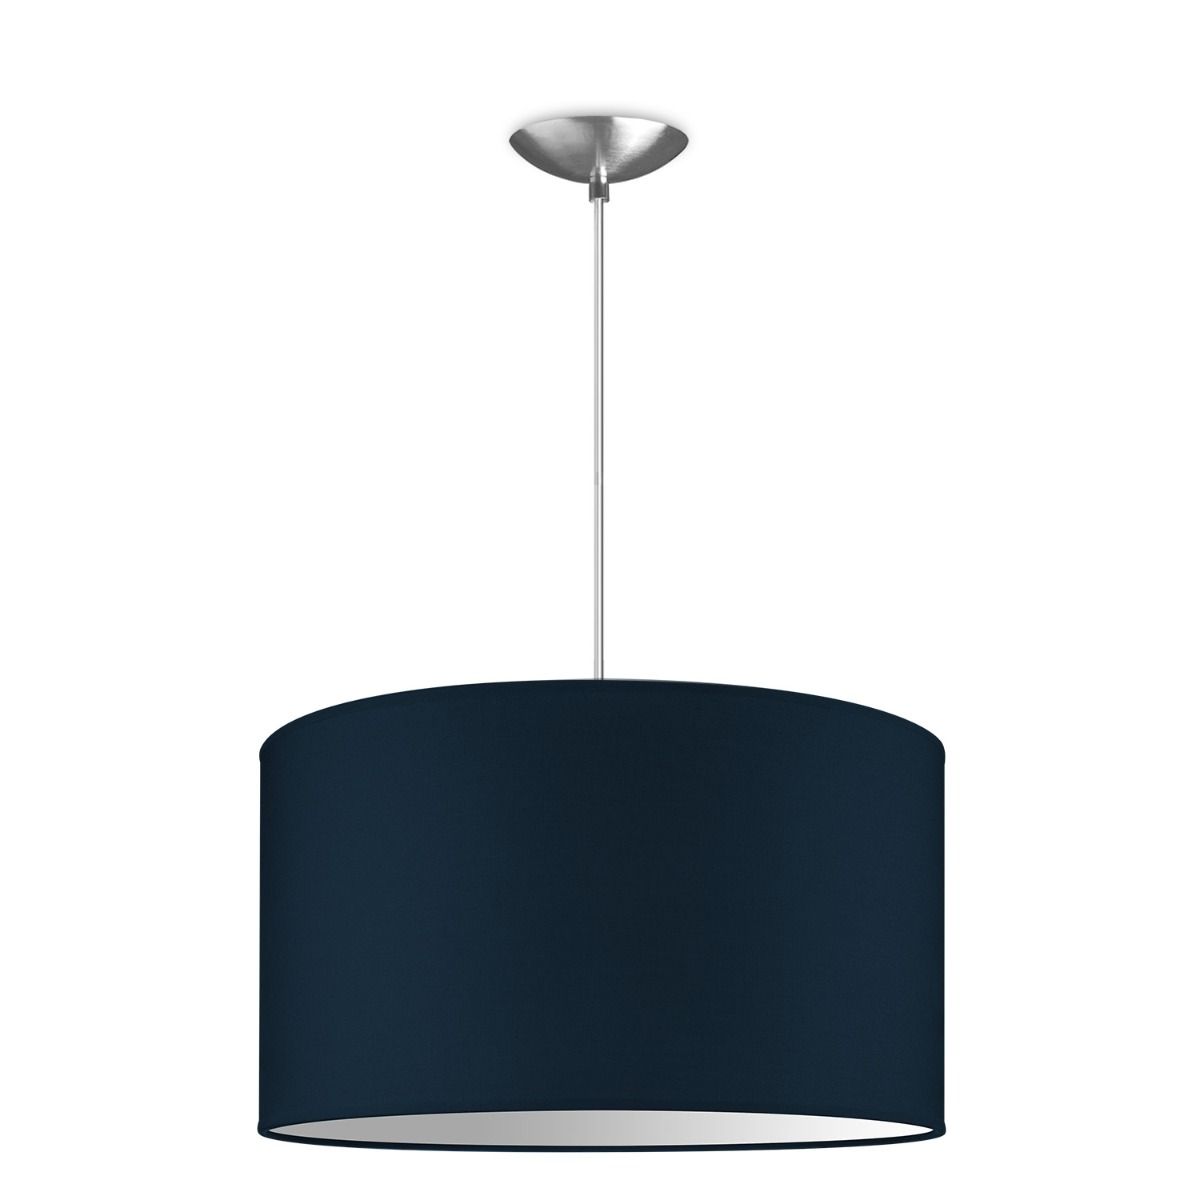 Light depot - hanglamp basic bling Ø 40 cm - blauw - Outlet